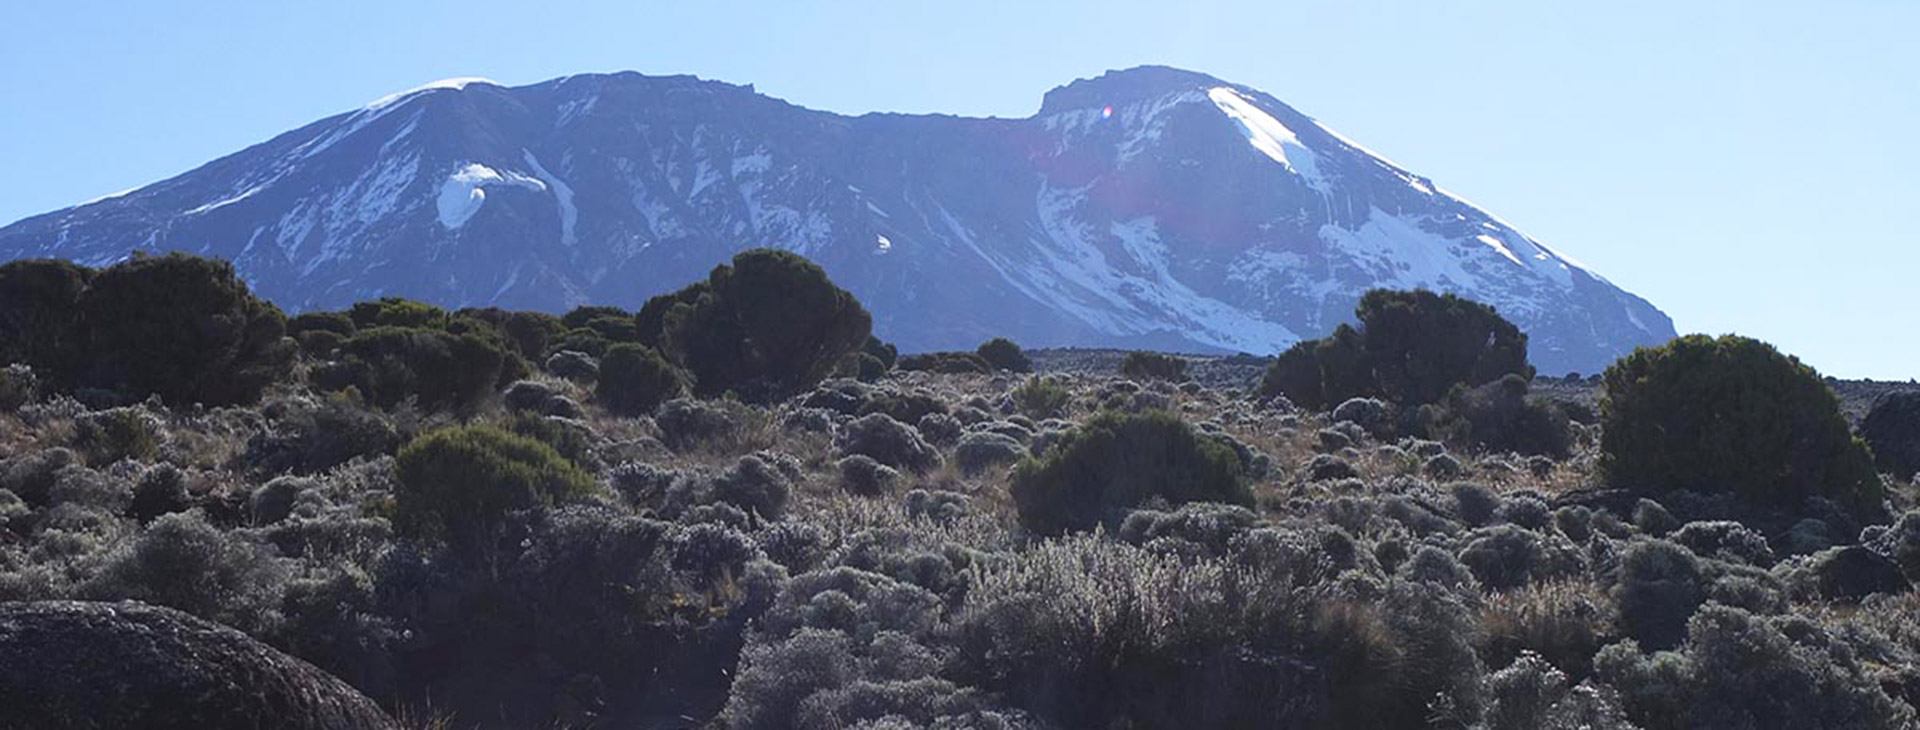 KKM - Wyprawa na Kilimandżaro trasą Machame